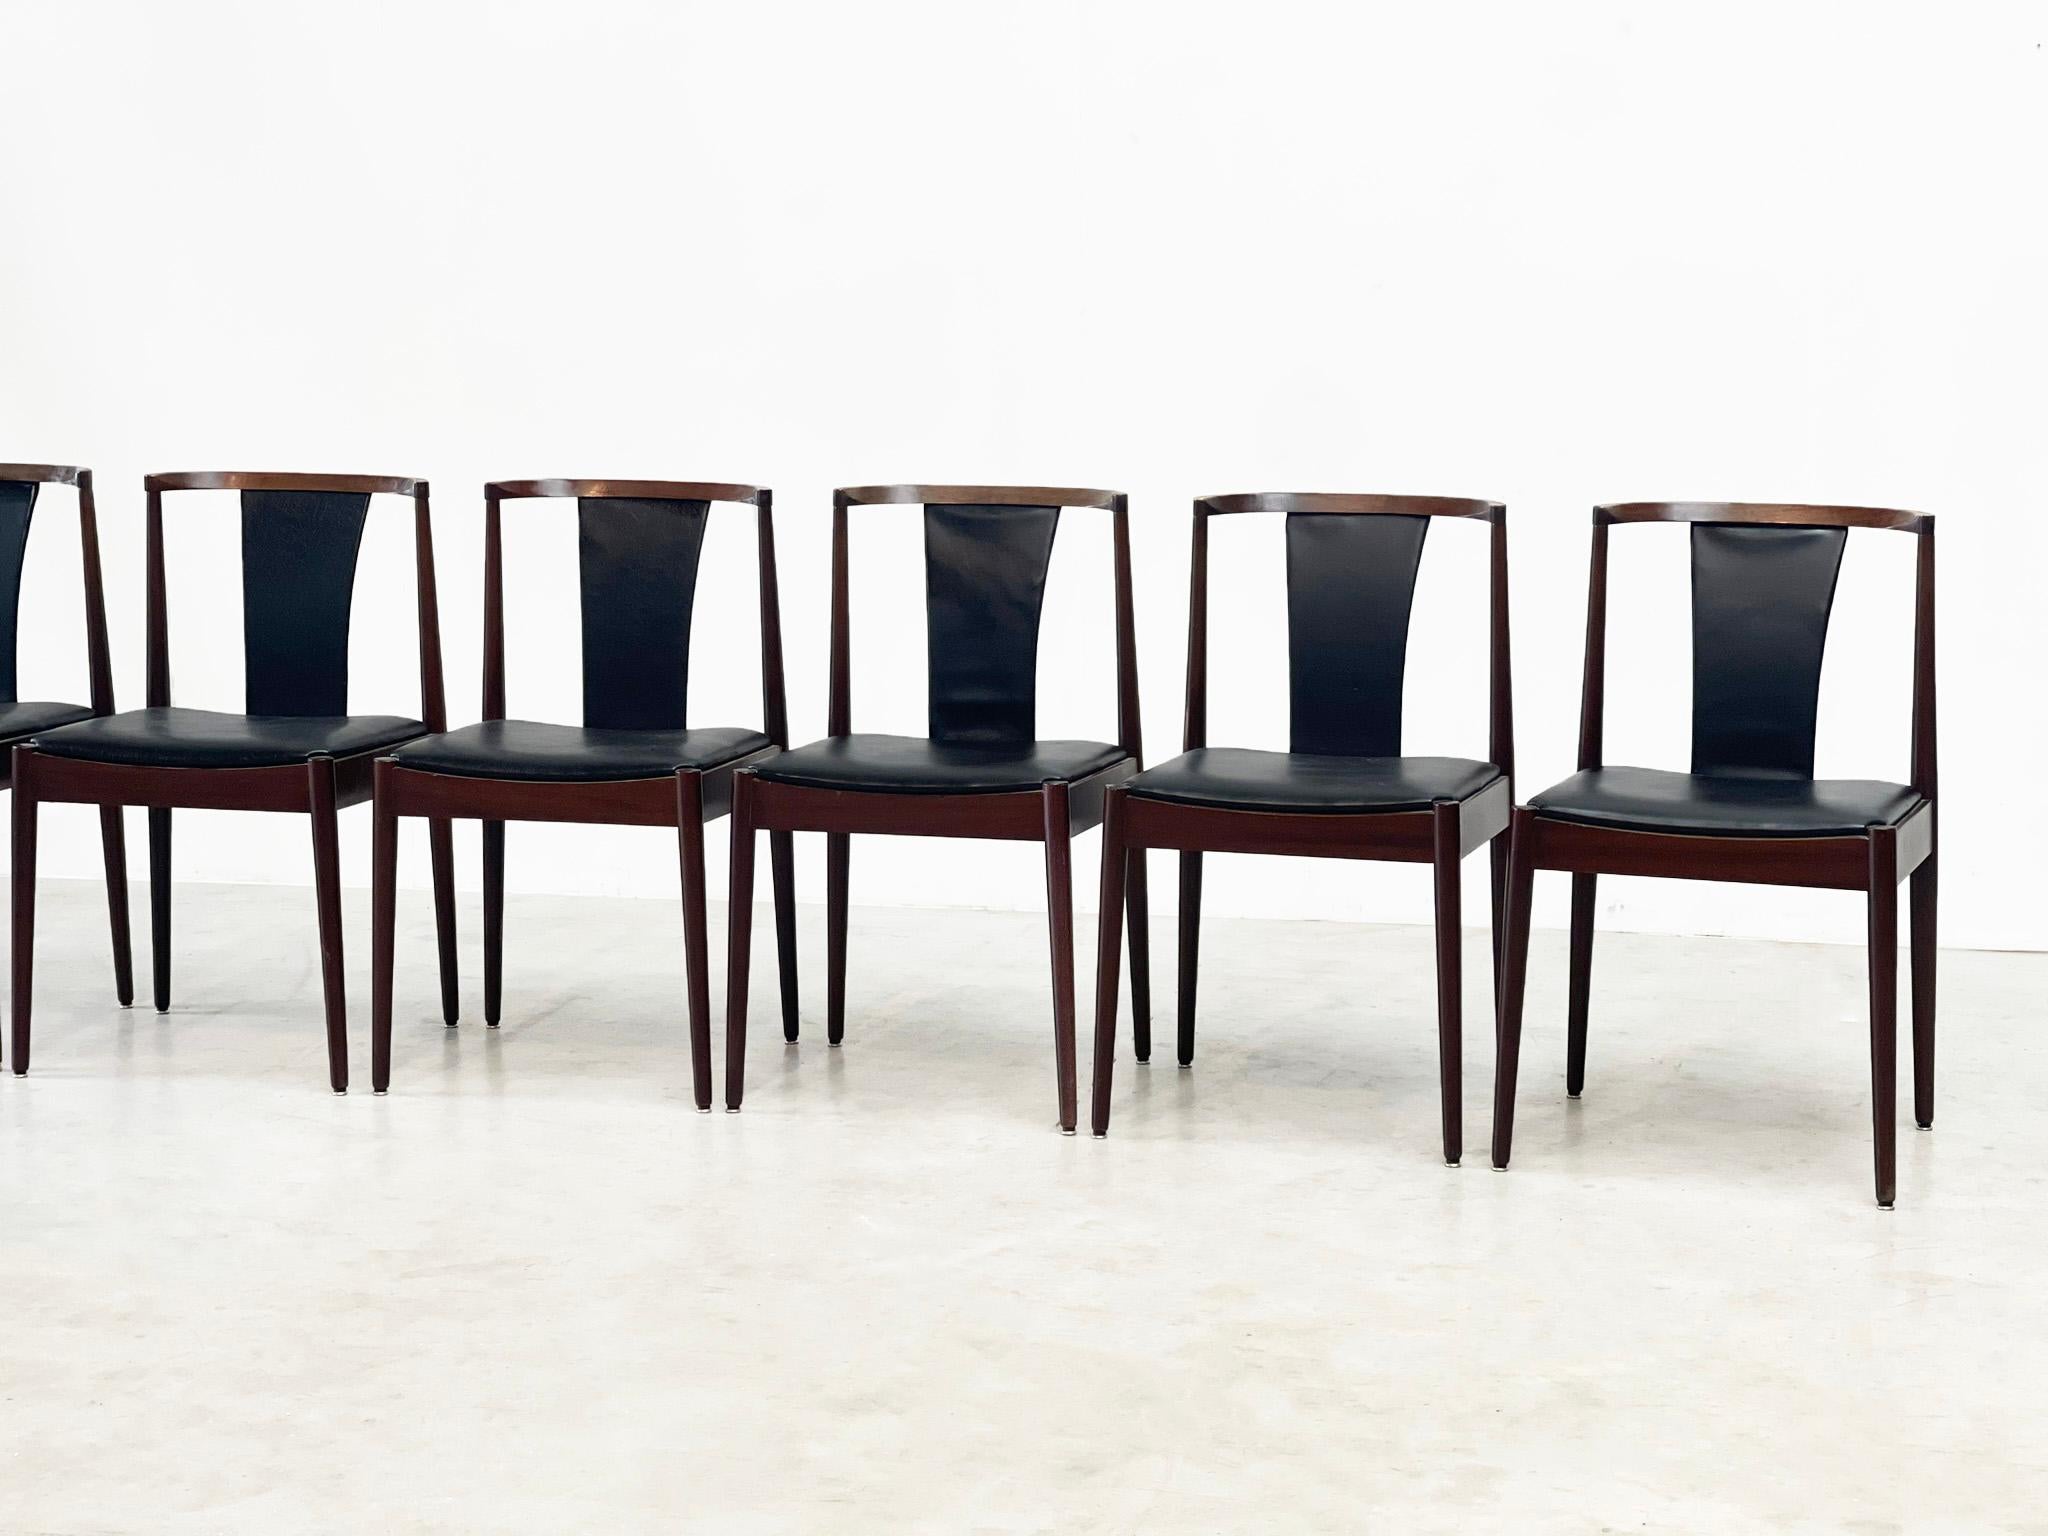 Chaises de salle à manger en cuir Casala
De belles chaises de salle à manger intemporelles. 
Ces chaises de salle à manger sont fabriquées par la célèbre marque Casala. Elles ont été conçues dans les années 80 par un inconnu, mais elles ont une